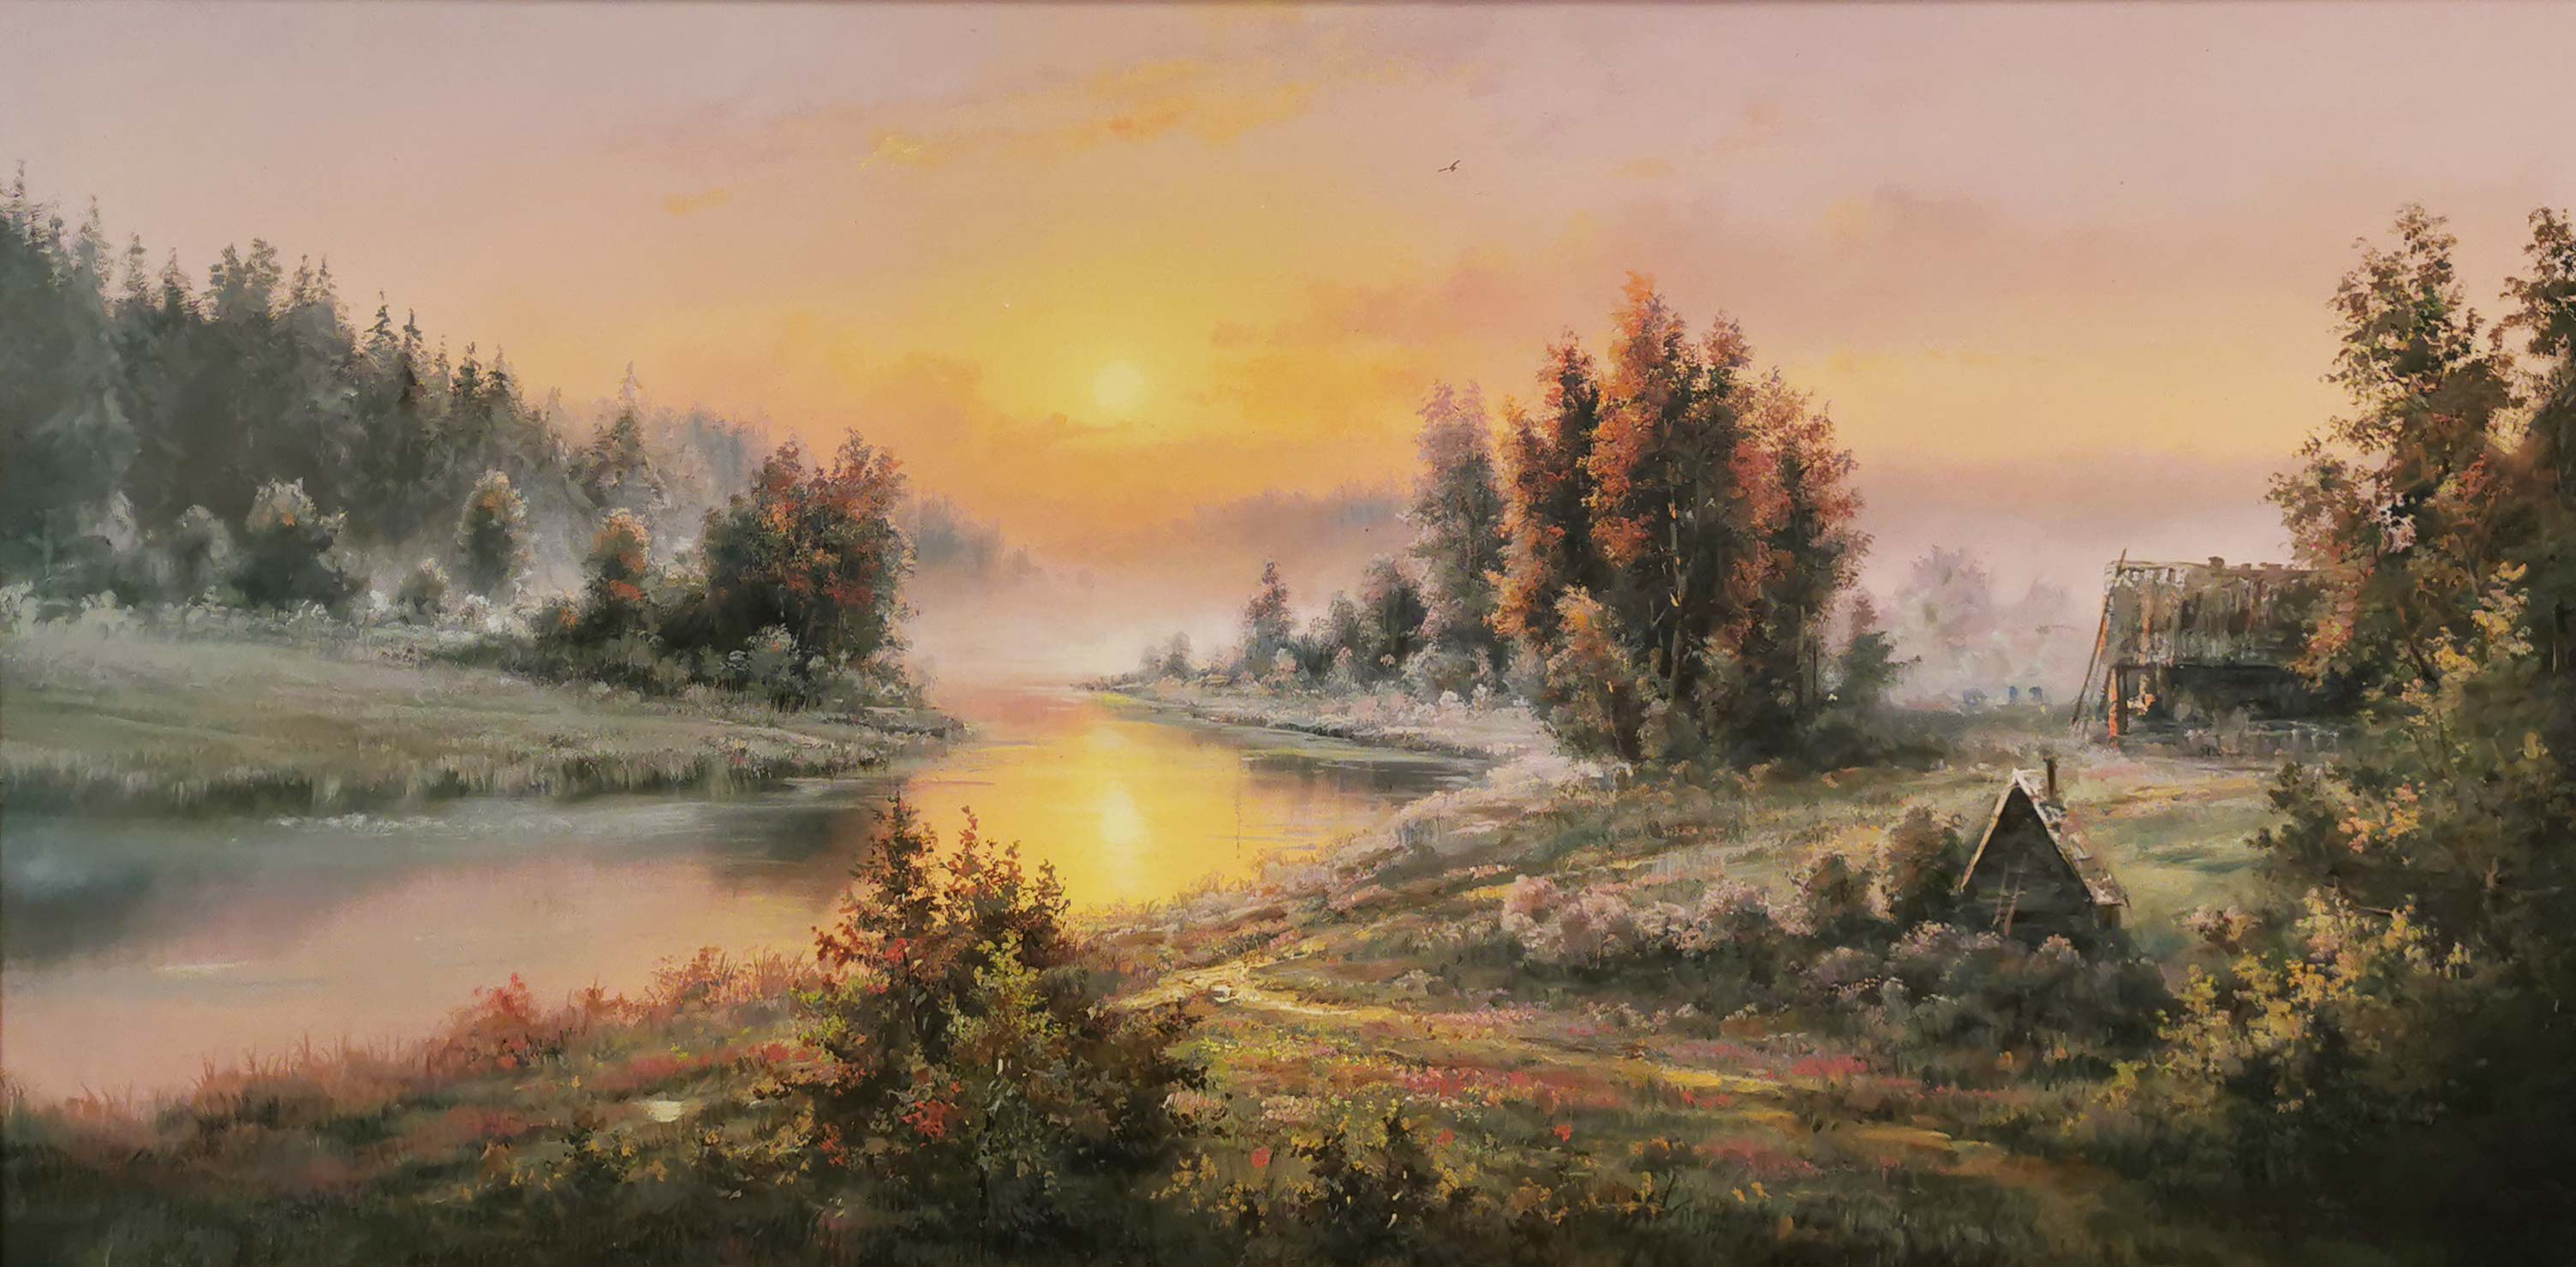 Morning Over the River - 1, Dmitry Balakhonov, Buy the painting Oil